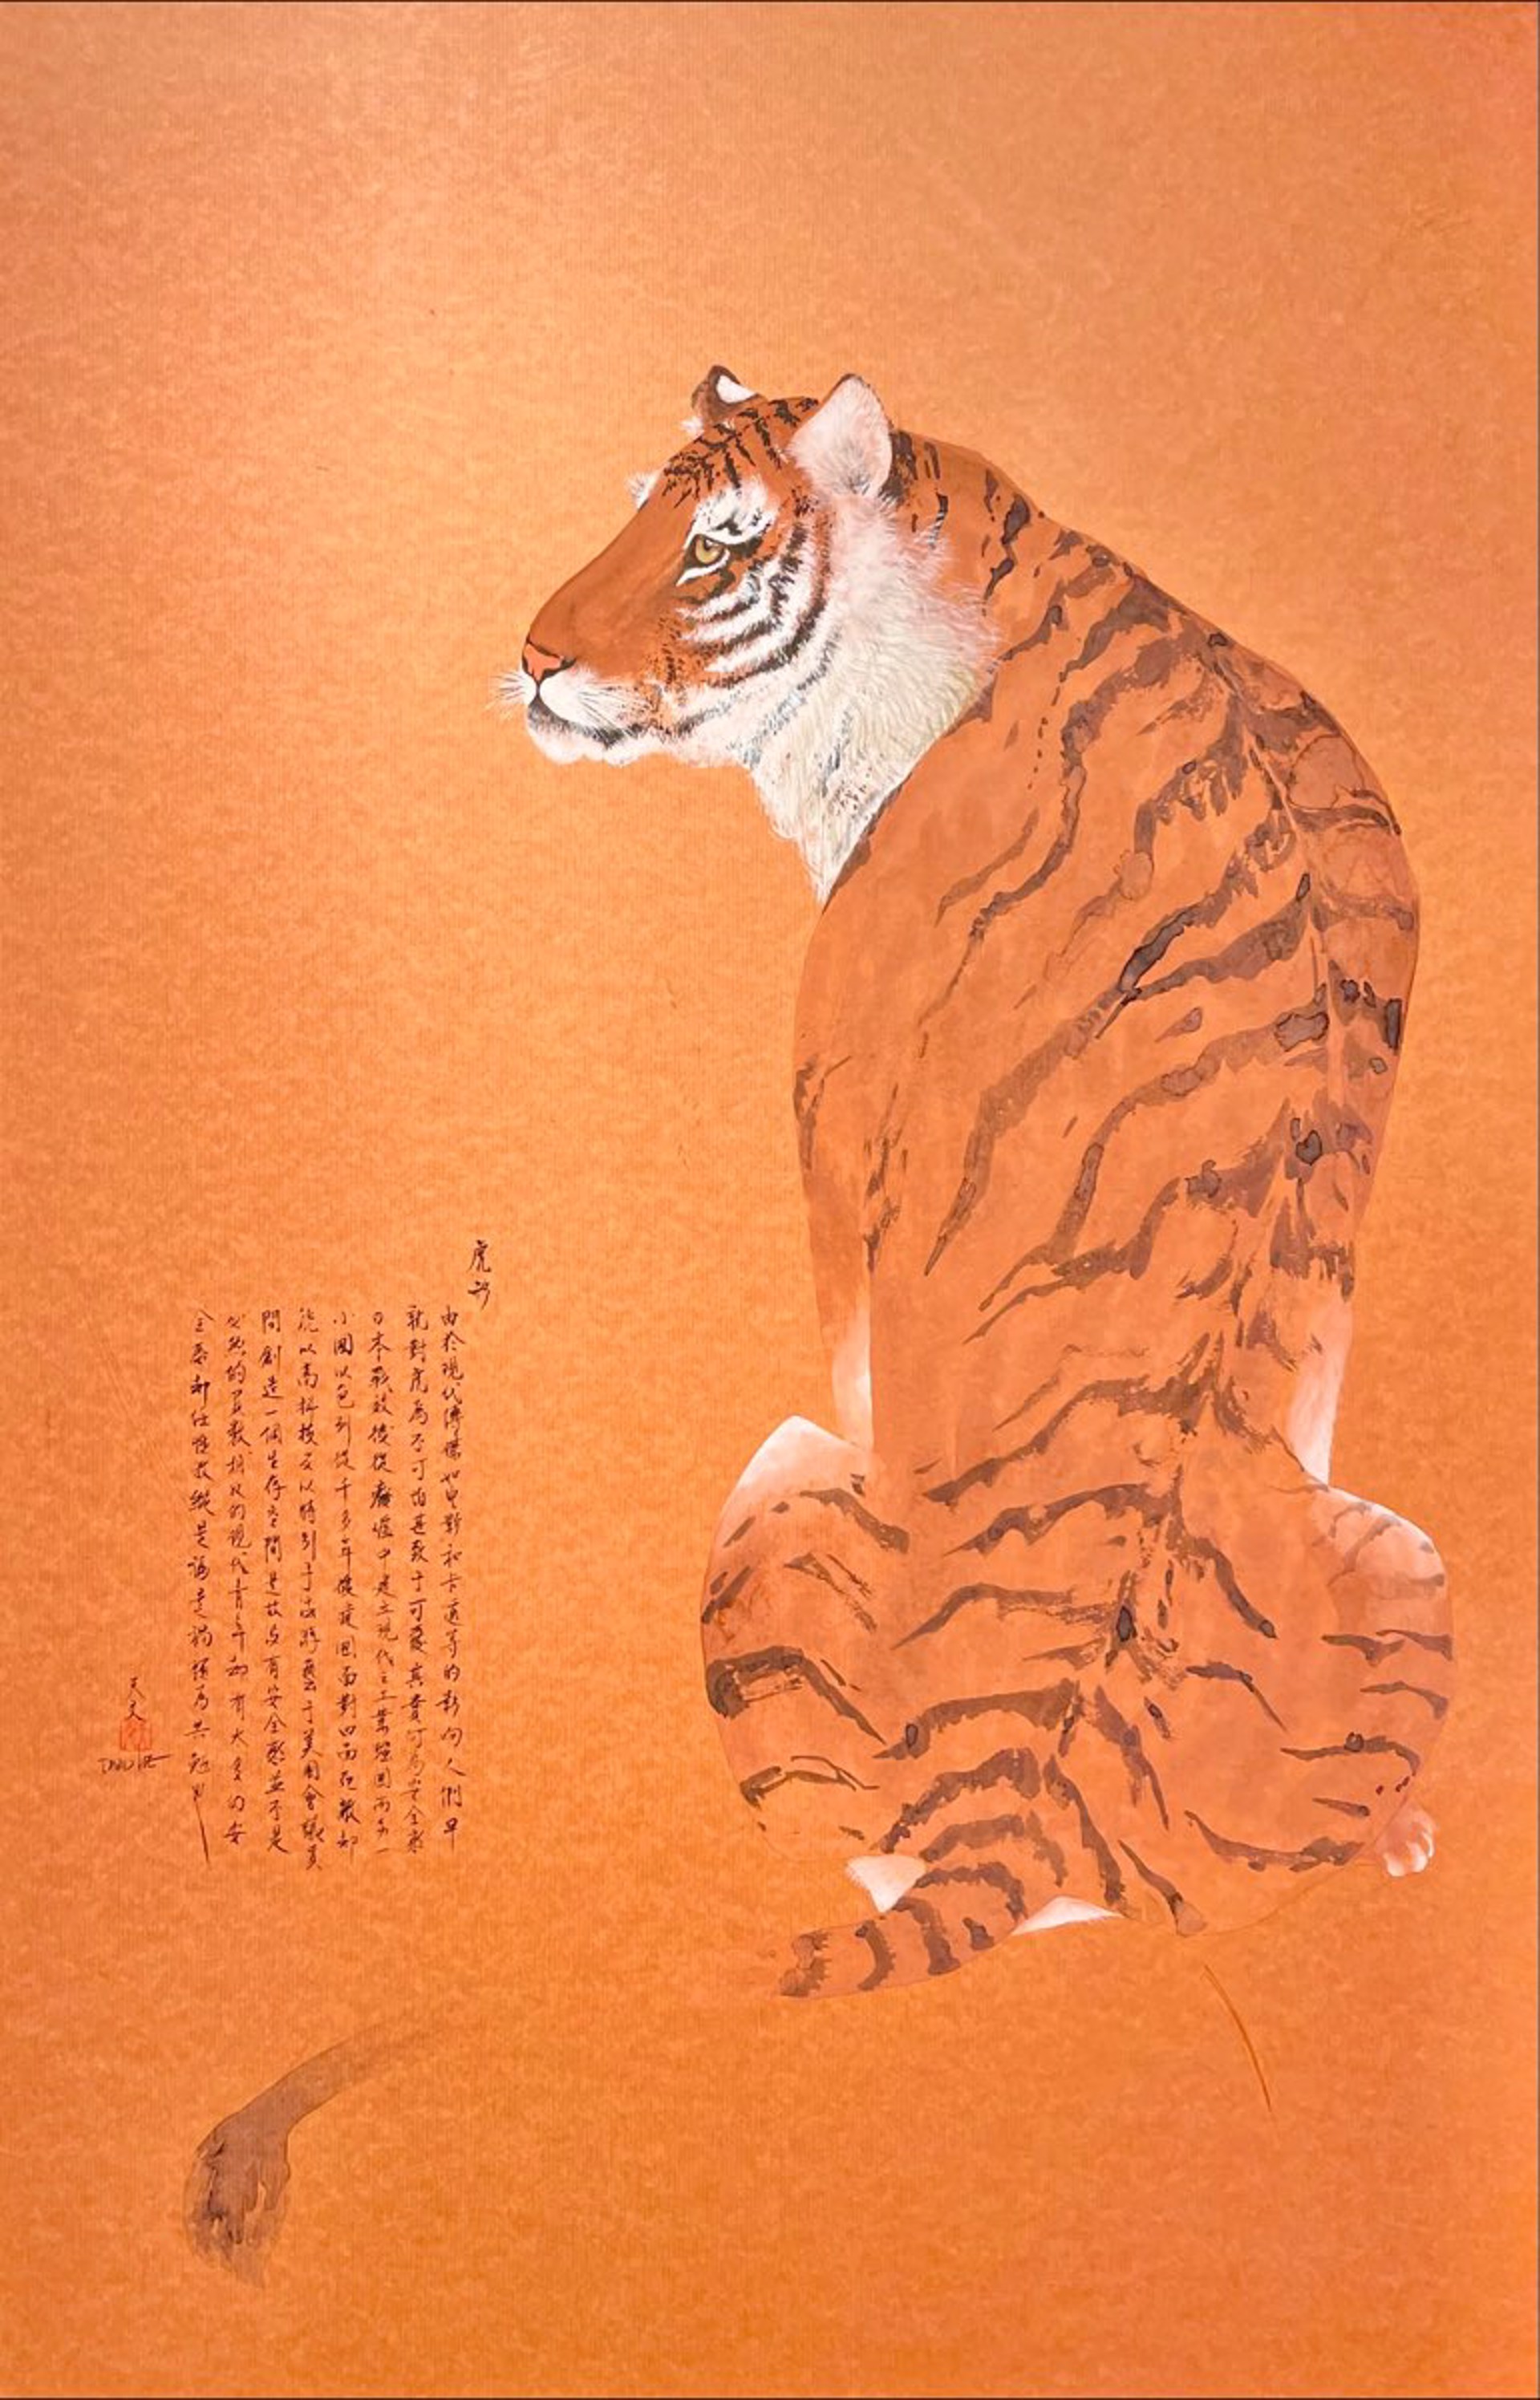 Tiger Spirit by David Lee